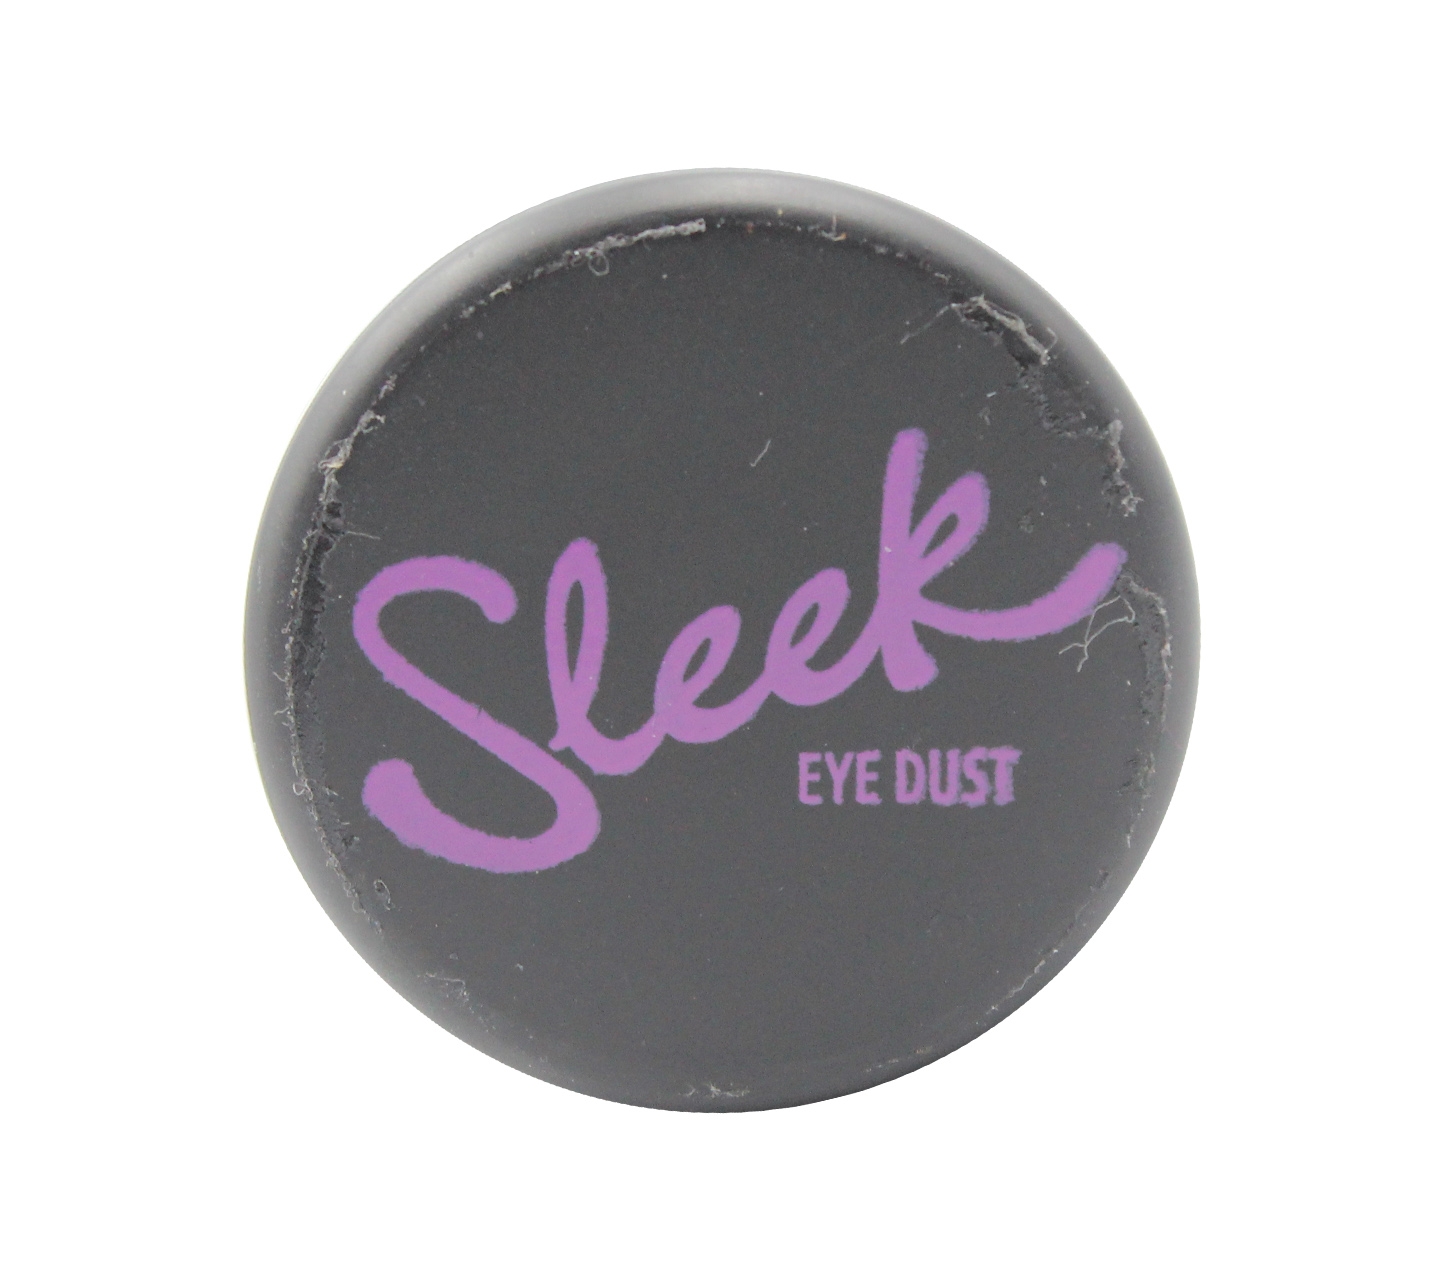 Sleek 681 Fantasy Eye Dust Eyes